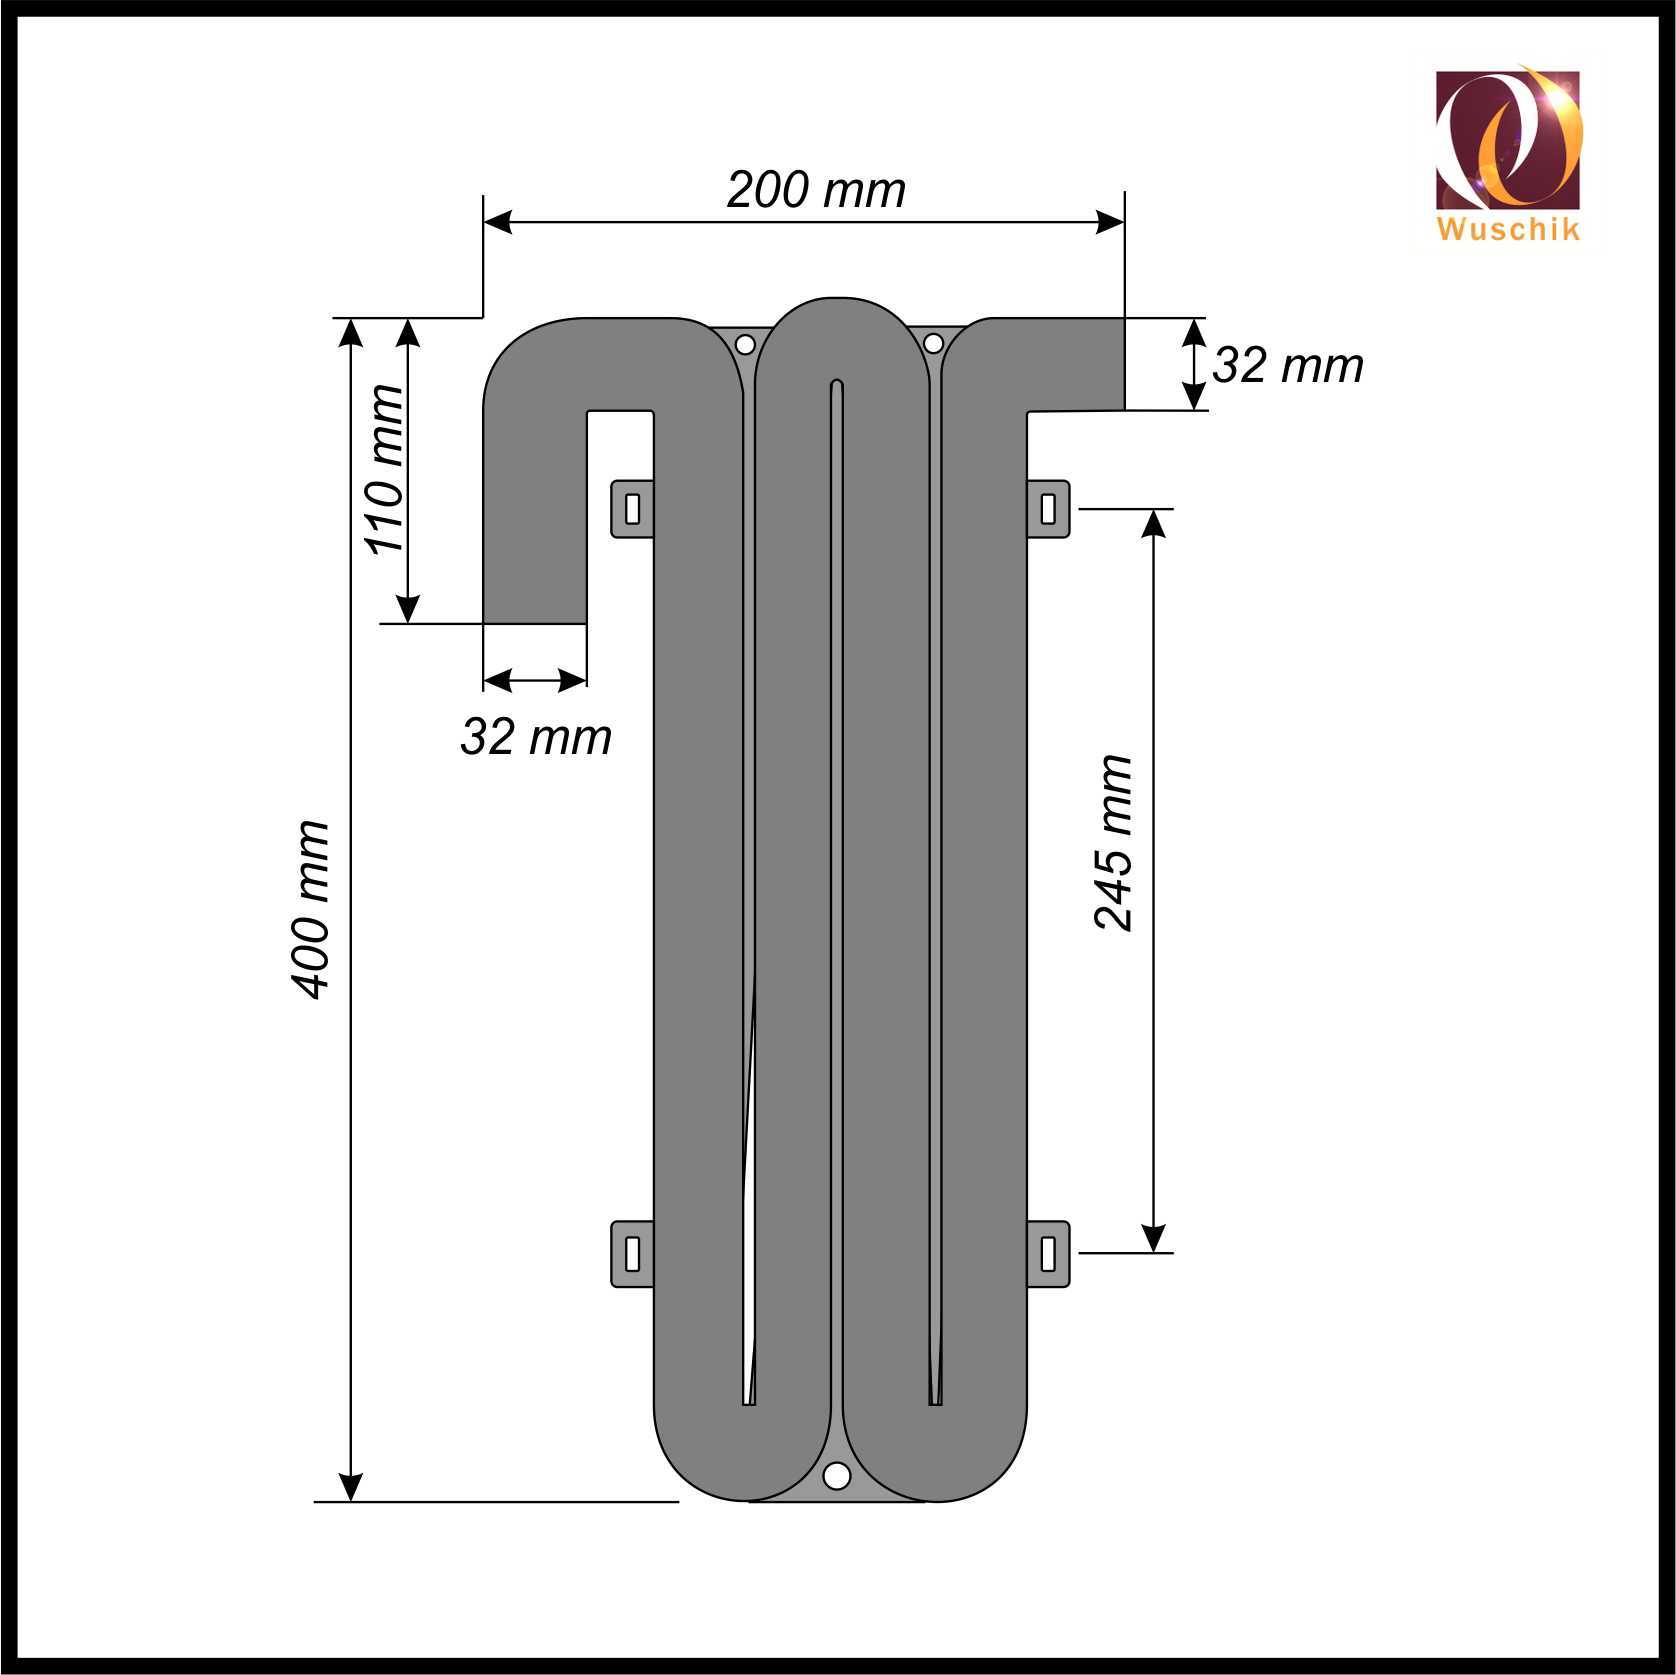 Abmessung-Ruecklaufsicherung-Rueckflussverhinderer-32-mm-Whirlpool-Luftmotor-Sicherung-Safety-loop-Air-Jacuzzi-Non-return-dimensions